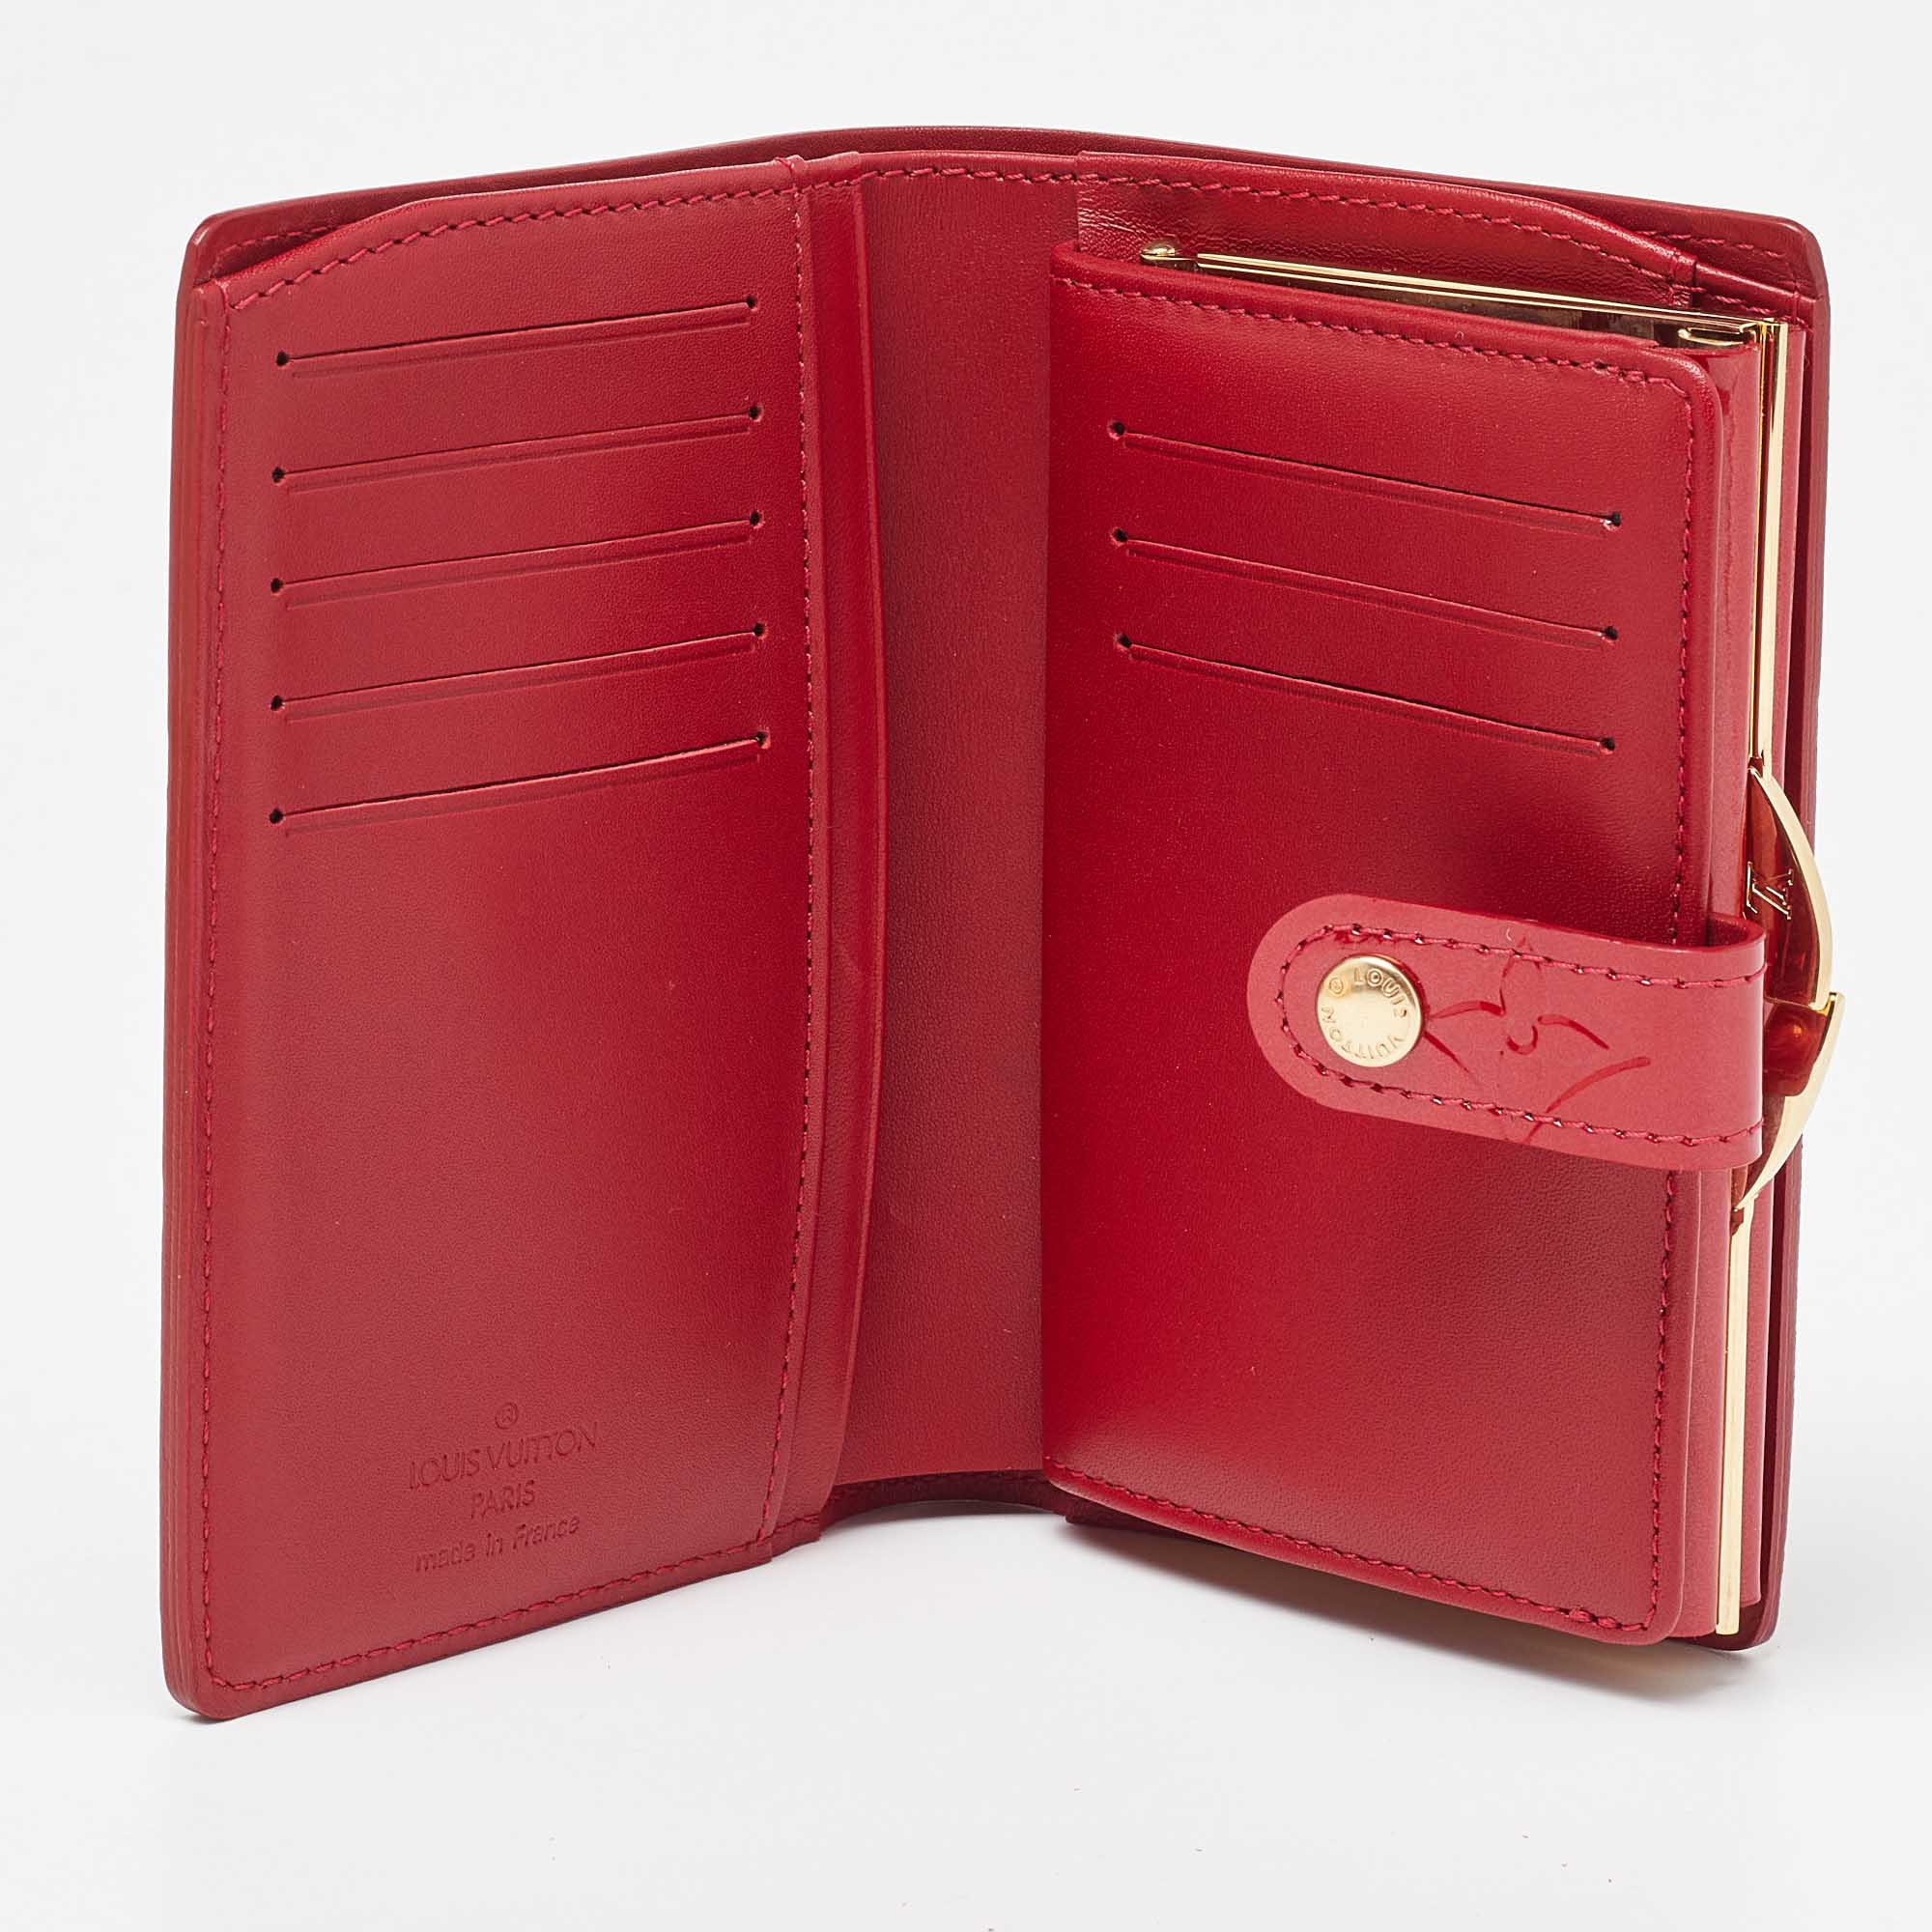 

Louis Vuitton Pomme D’amour Monogram Vernis Portefeuille Viennois Wallet, Red